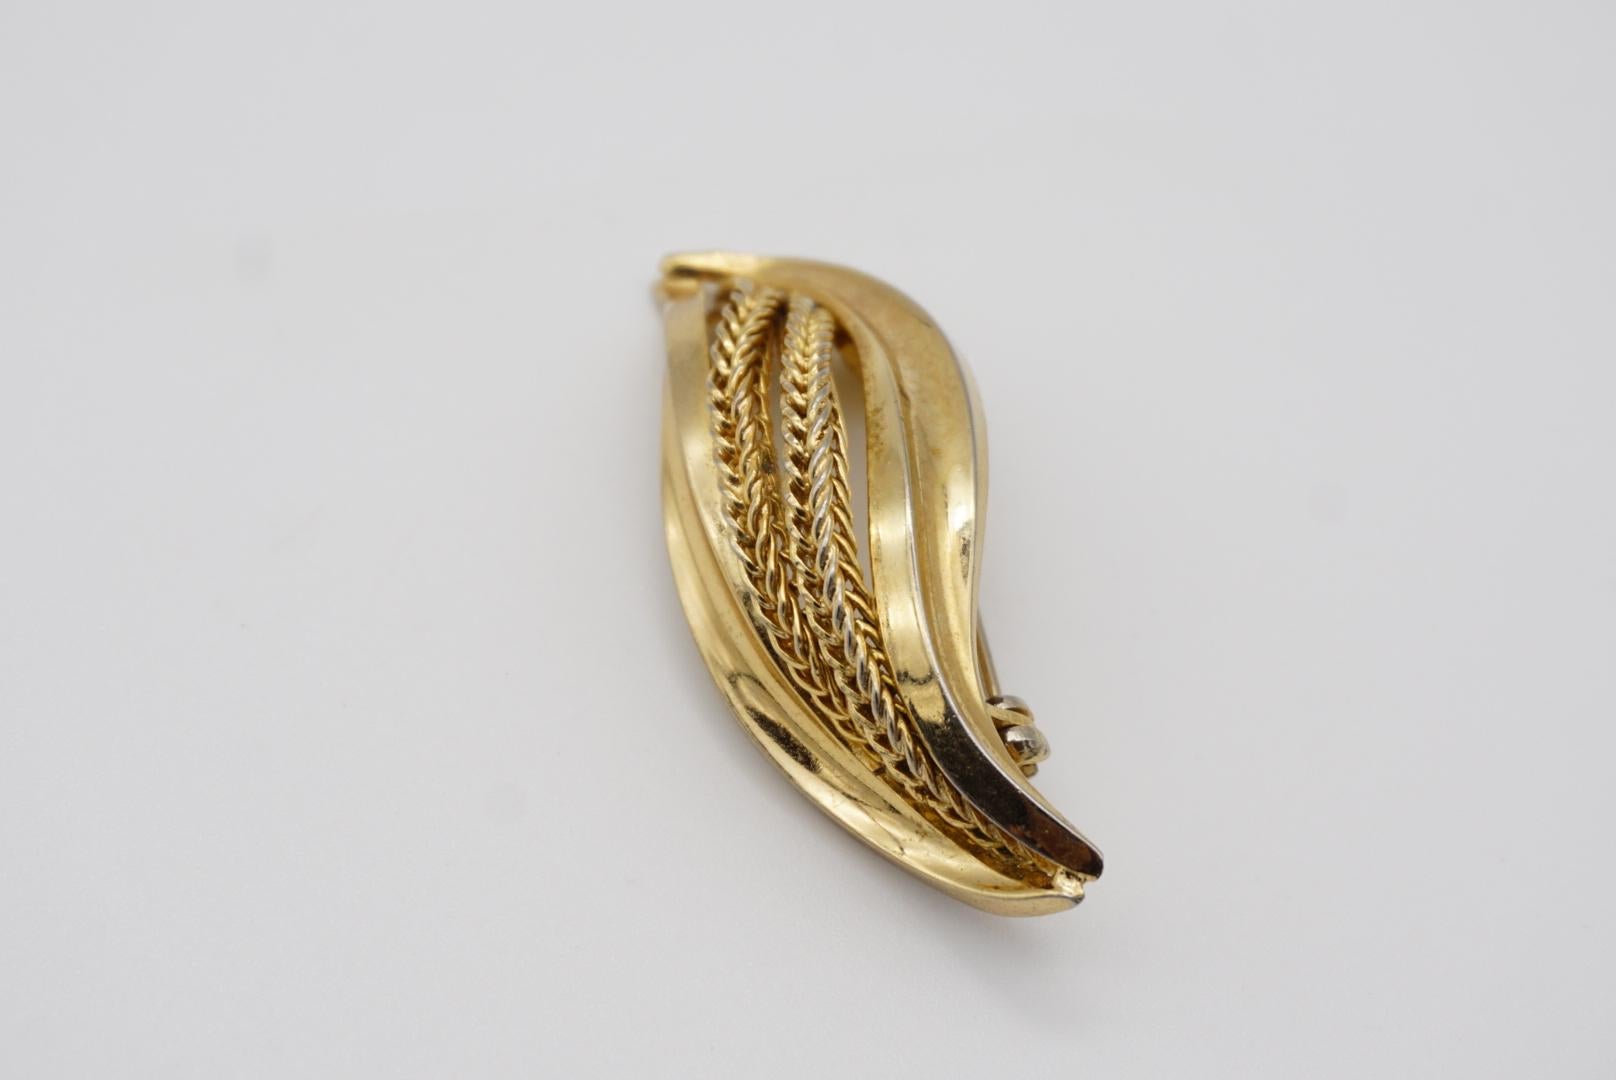 Christian Dior GROSSE 1965 Vintage Curled Swirl Rope Modernist Leaf Gold Brooch For Sale 4